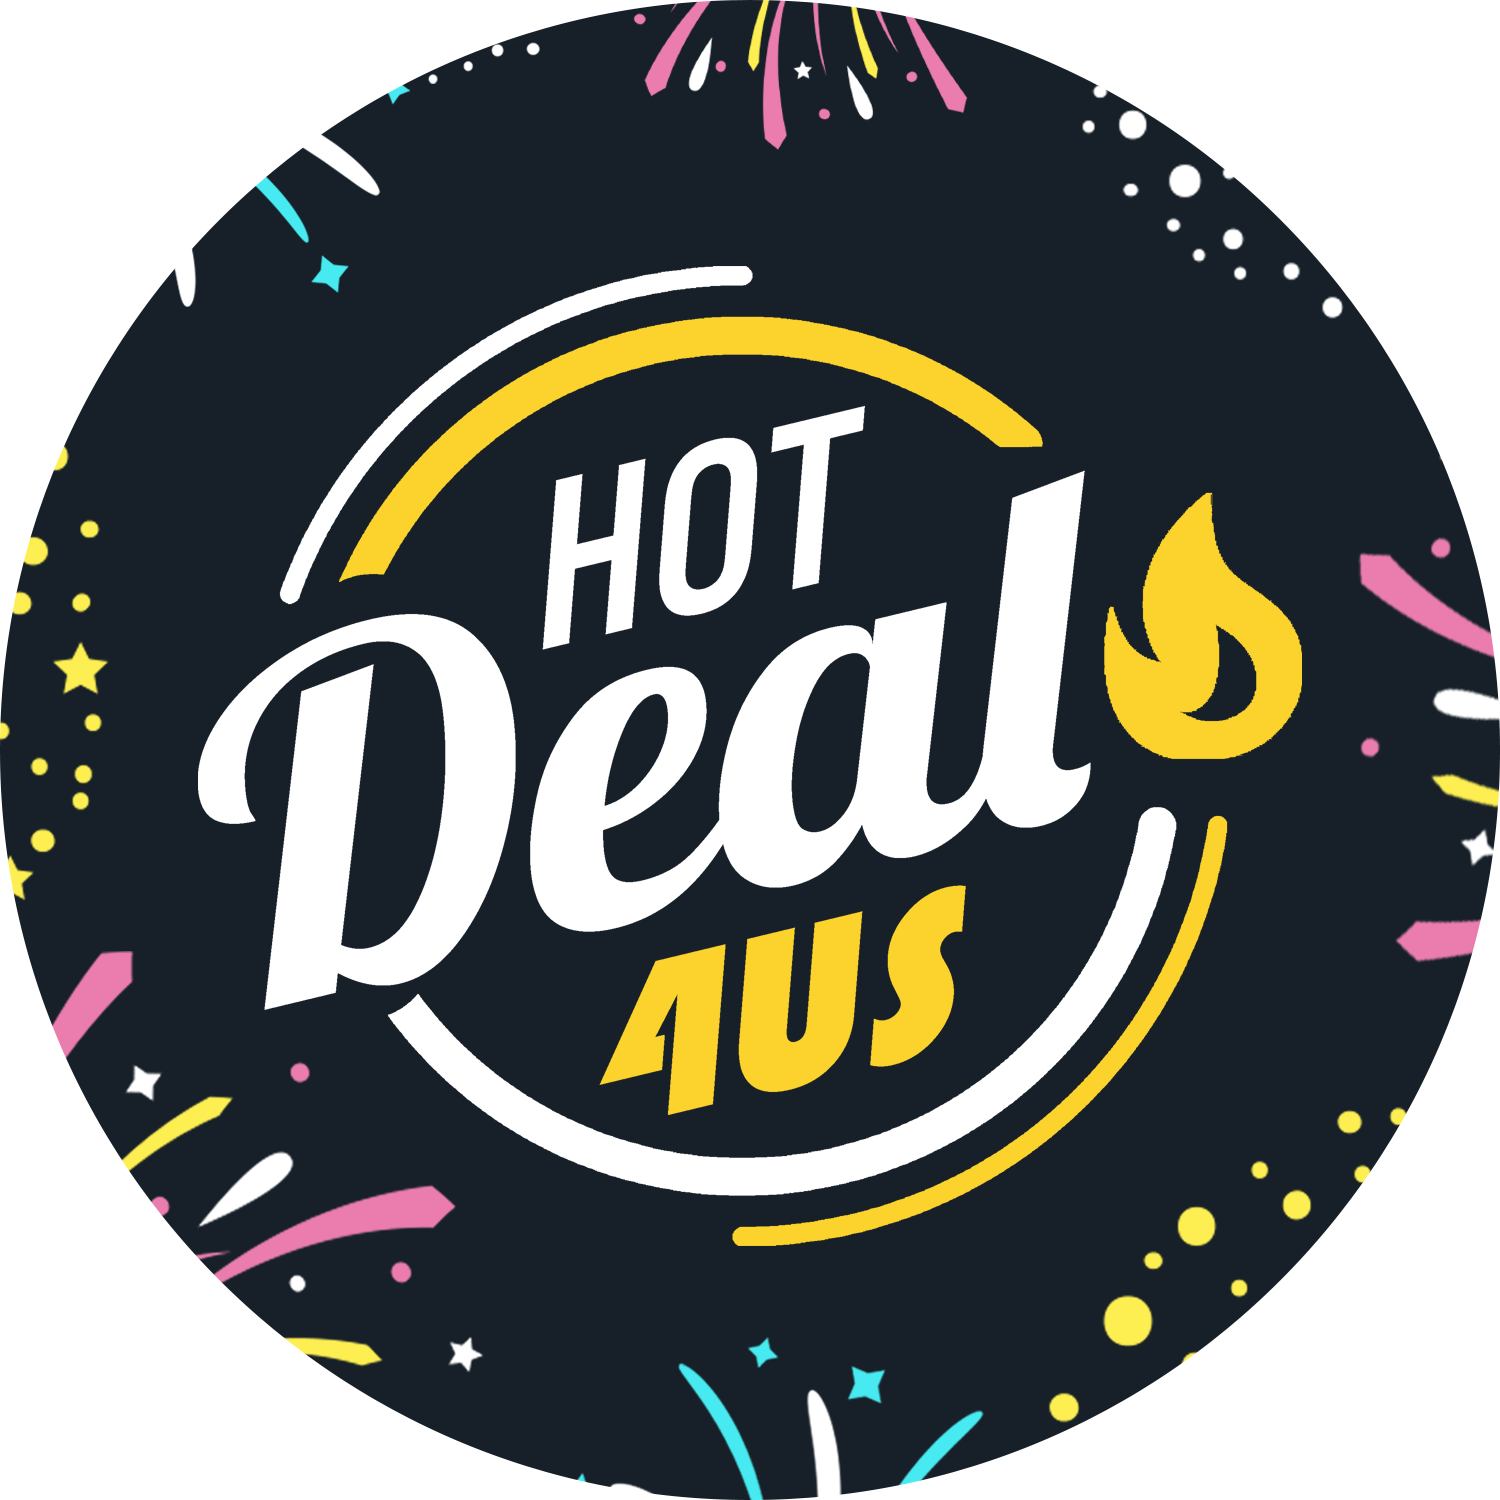 Hot Deals 4US